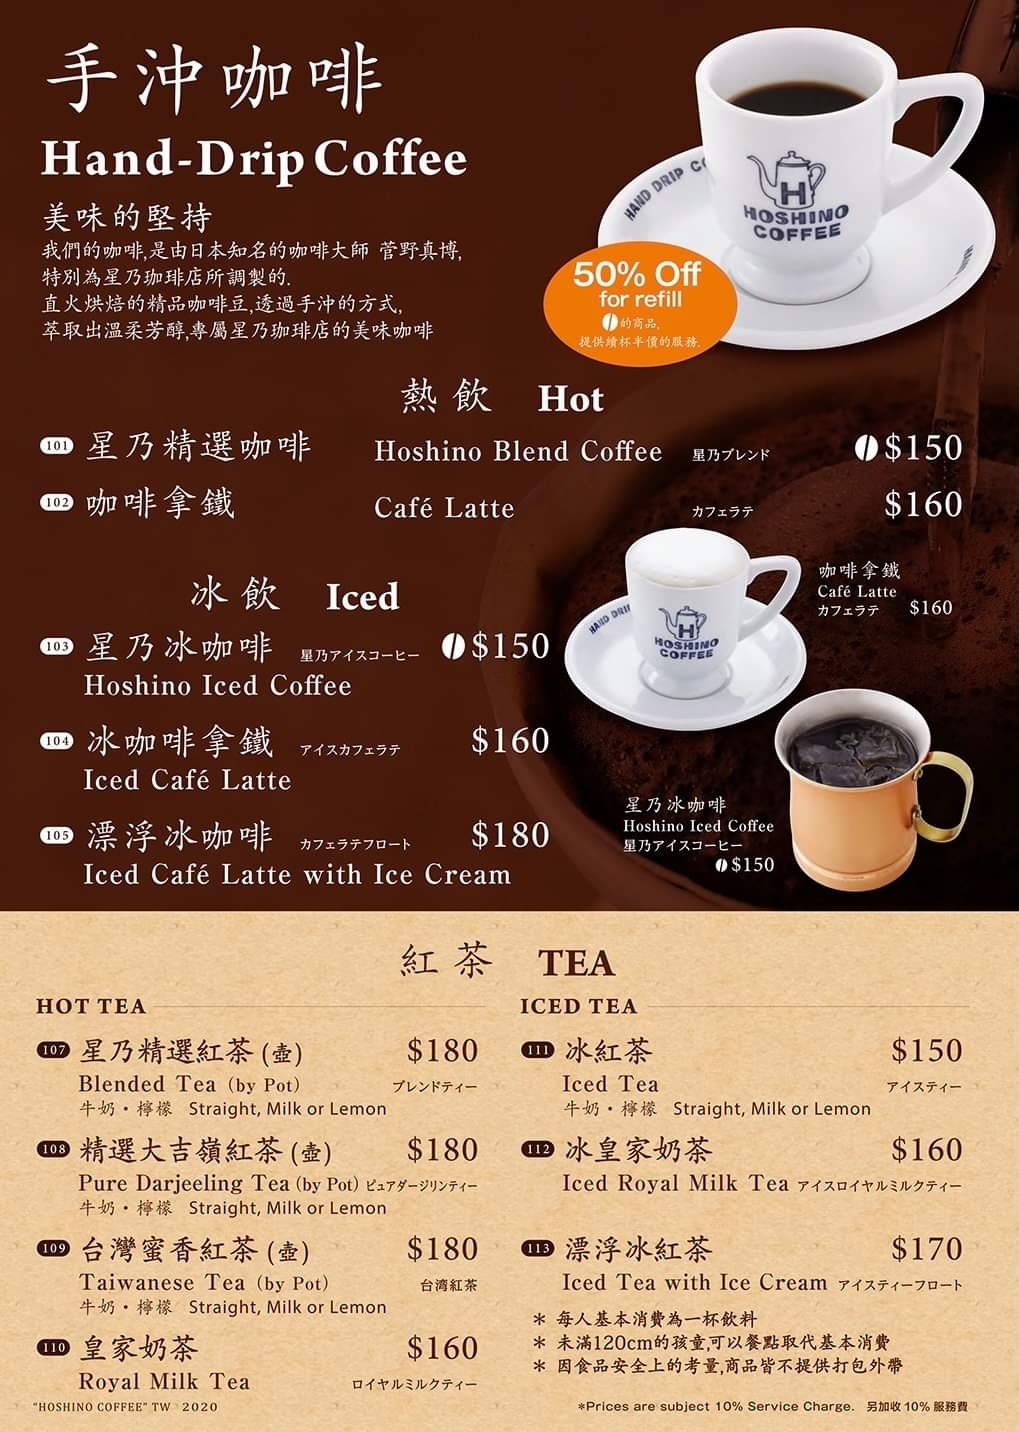 【食記】星乃咖啡菜單、店家資訊 HOSHINO COFFEE